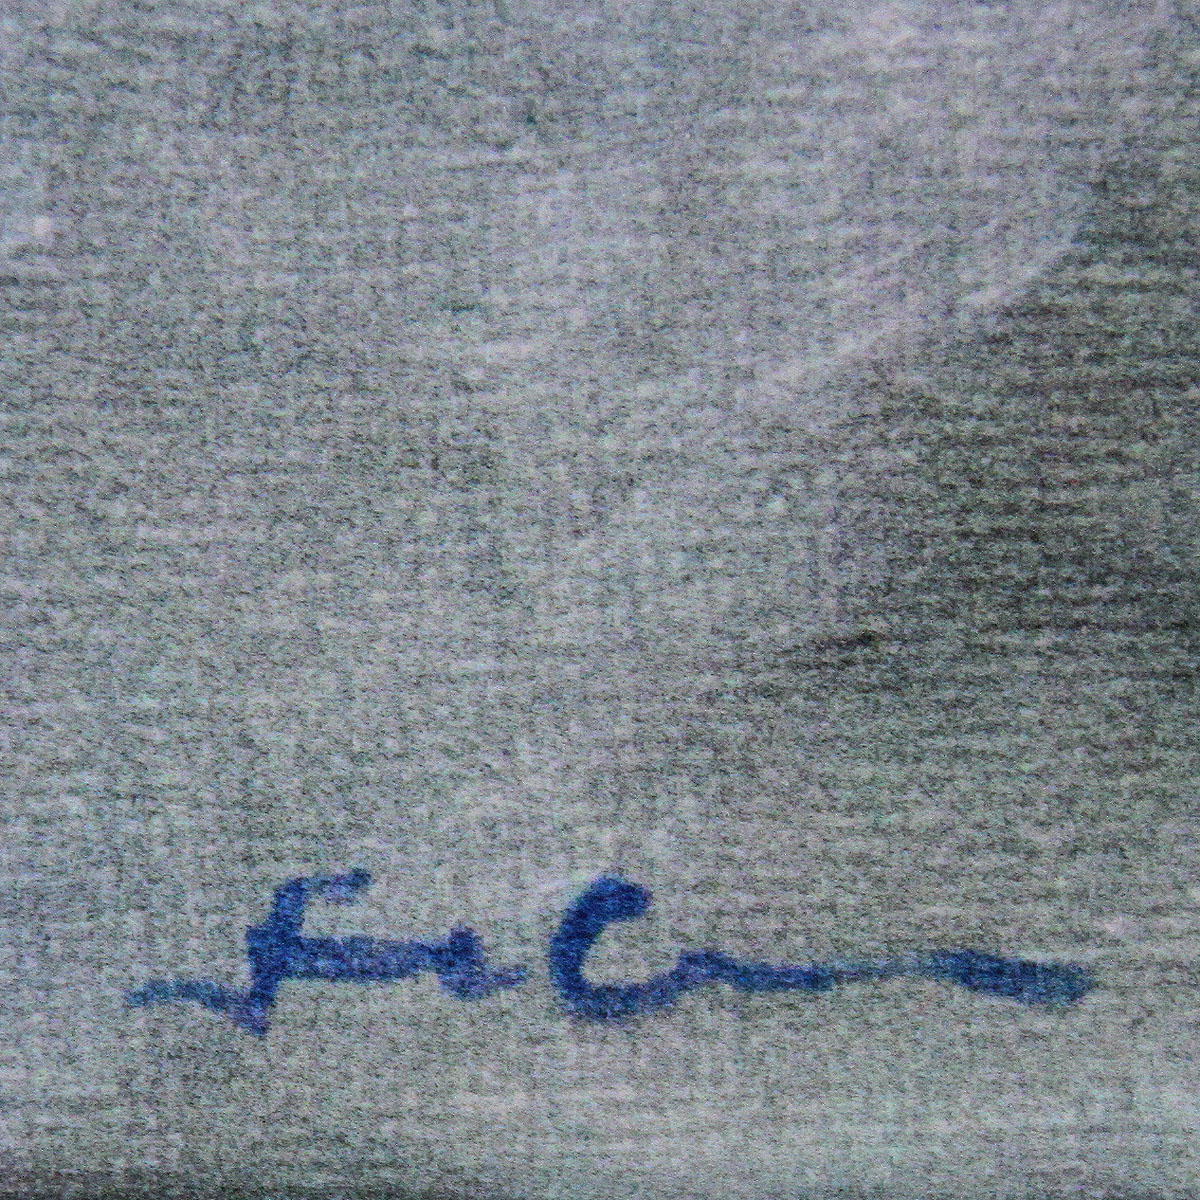 Kunstedition, signierter Kunstdruck auf Leinwand, Uwe Fehrmann: "Regen"